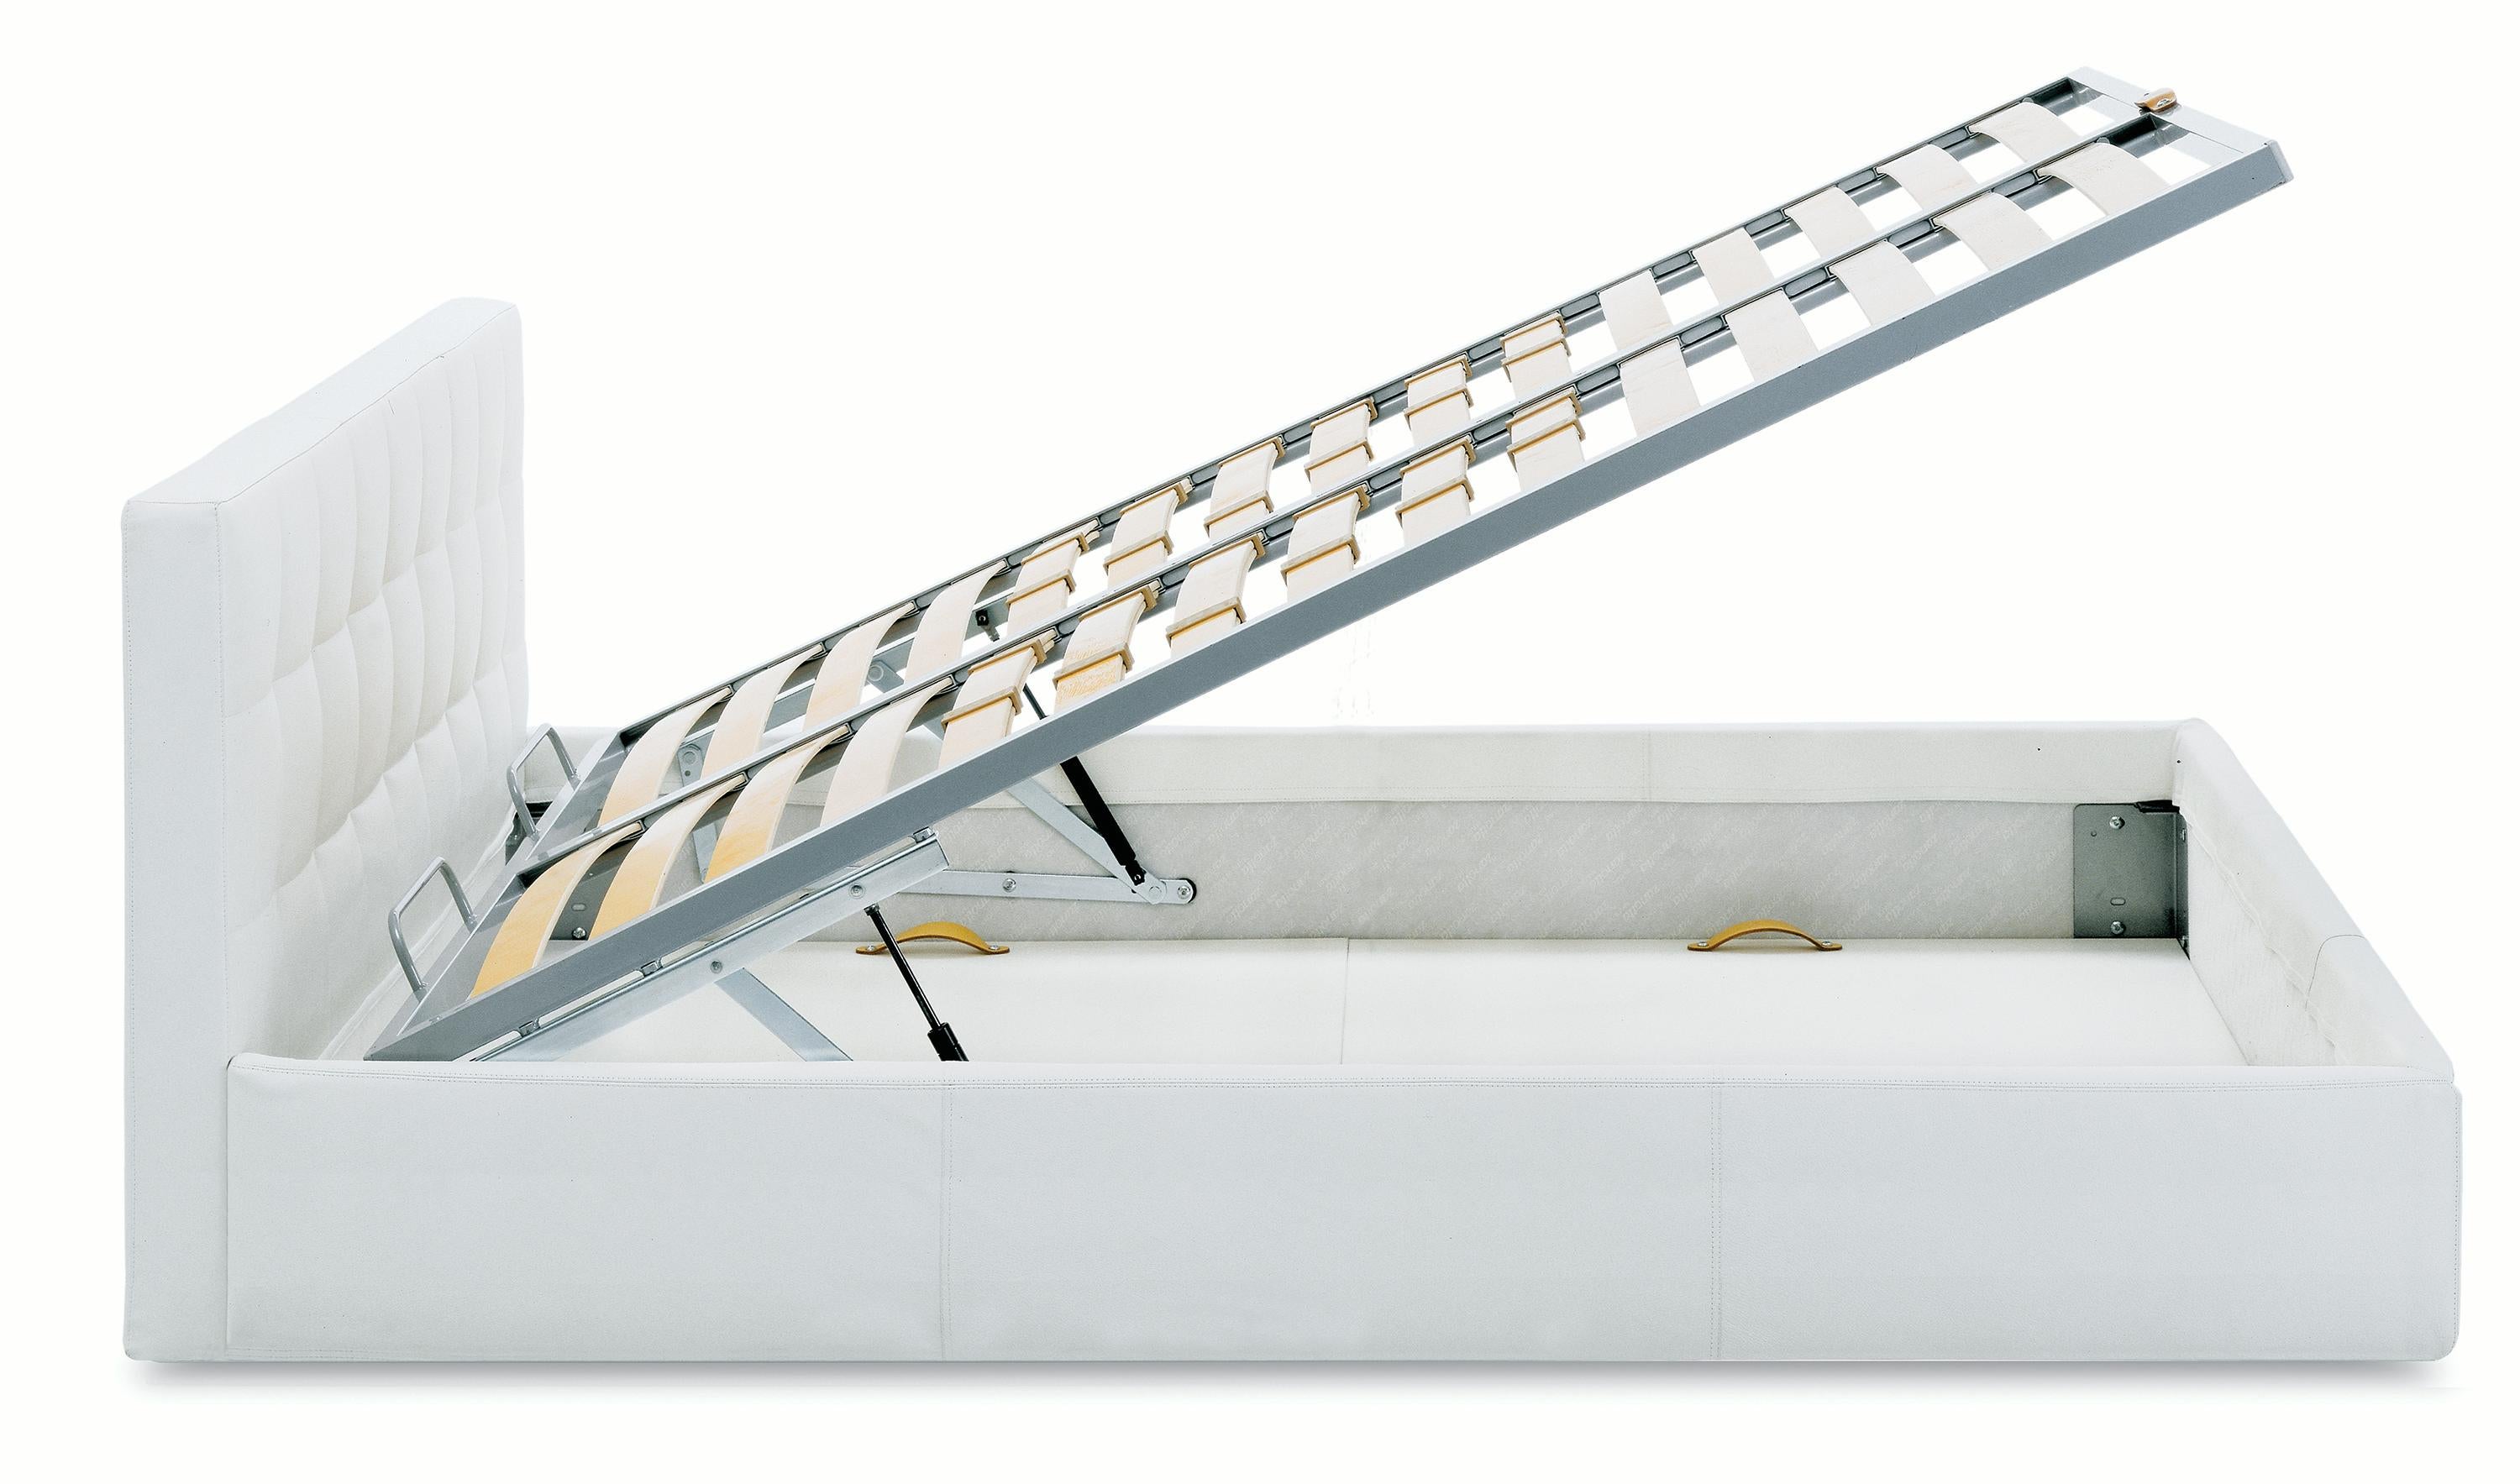 Zanotta King Size Box Bed with Container Unit in Beige Upholstery & Steel Frame by Emaf Progetti (en anglais)

Lit avec unité de conteneur. Cadre en acier, aluminium verni. Suspension en lamelles de hêtre naturel plié, avec réglage de la rigidité,